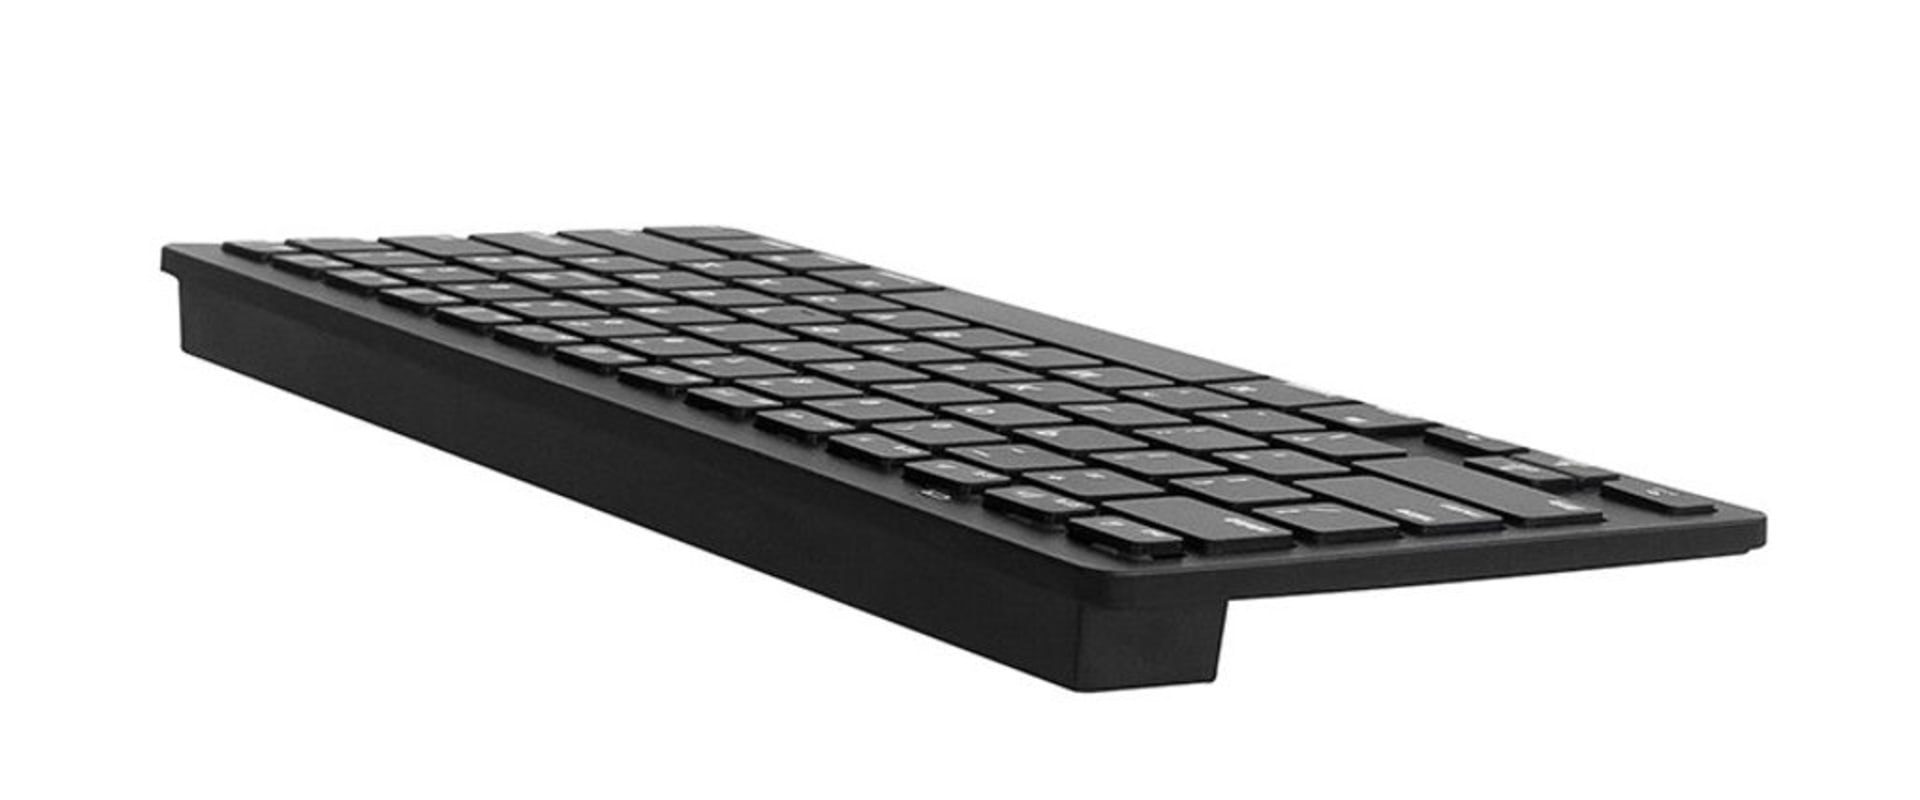 Ist die Bluetooth-Tastatur dasselbe wie die kabellose Tastatur?